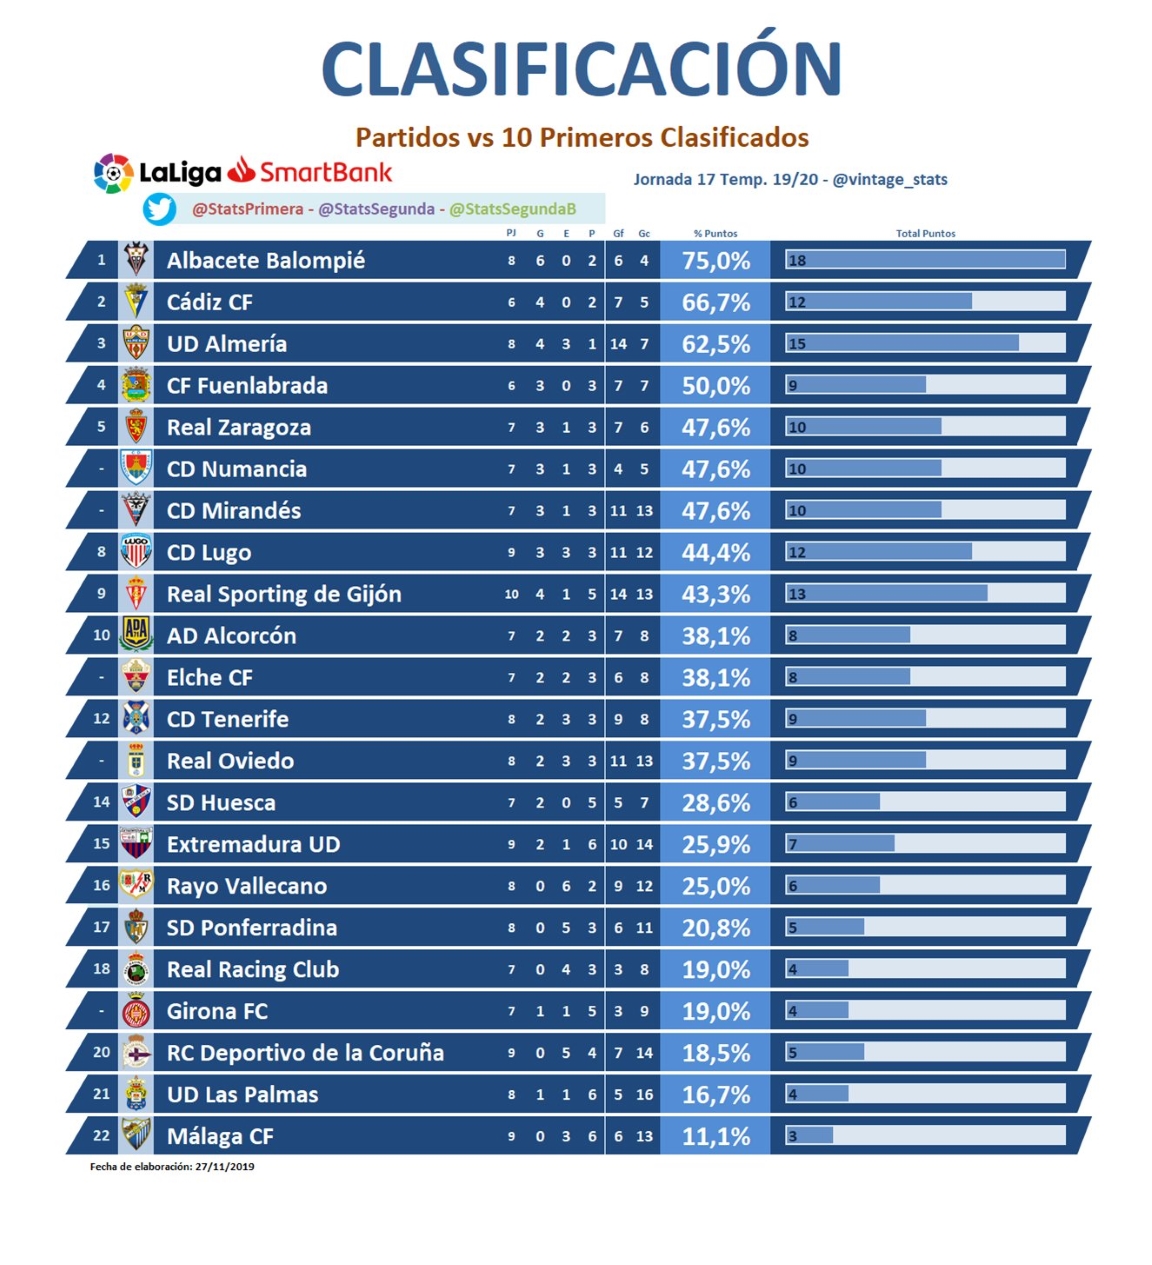 Clasificación considerando los partidos frente a los 10 primeros clasificados